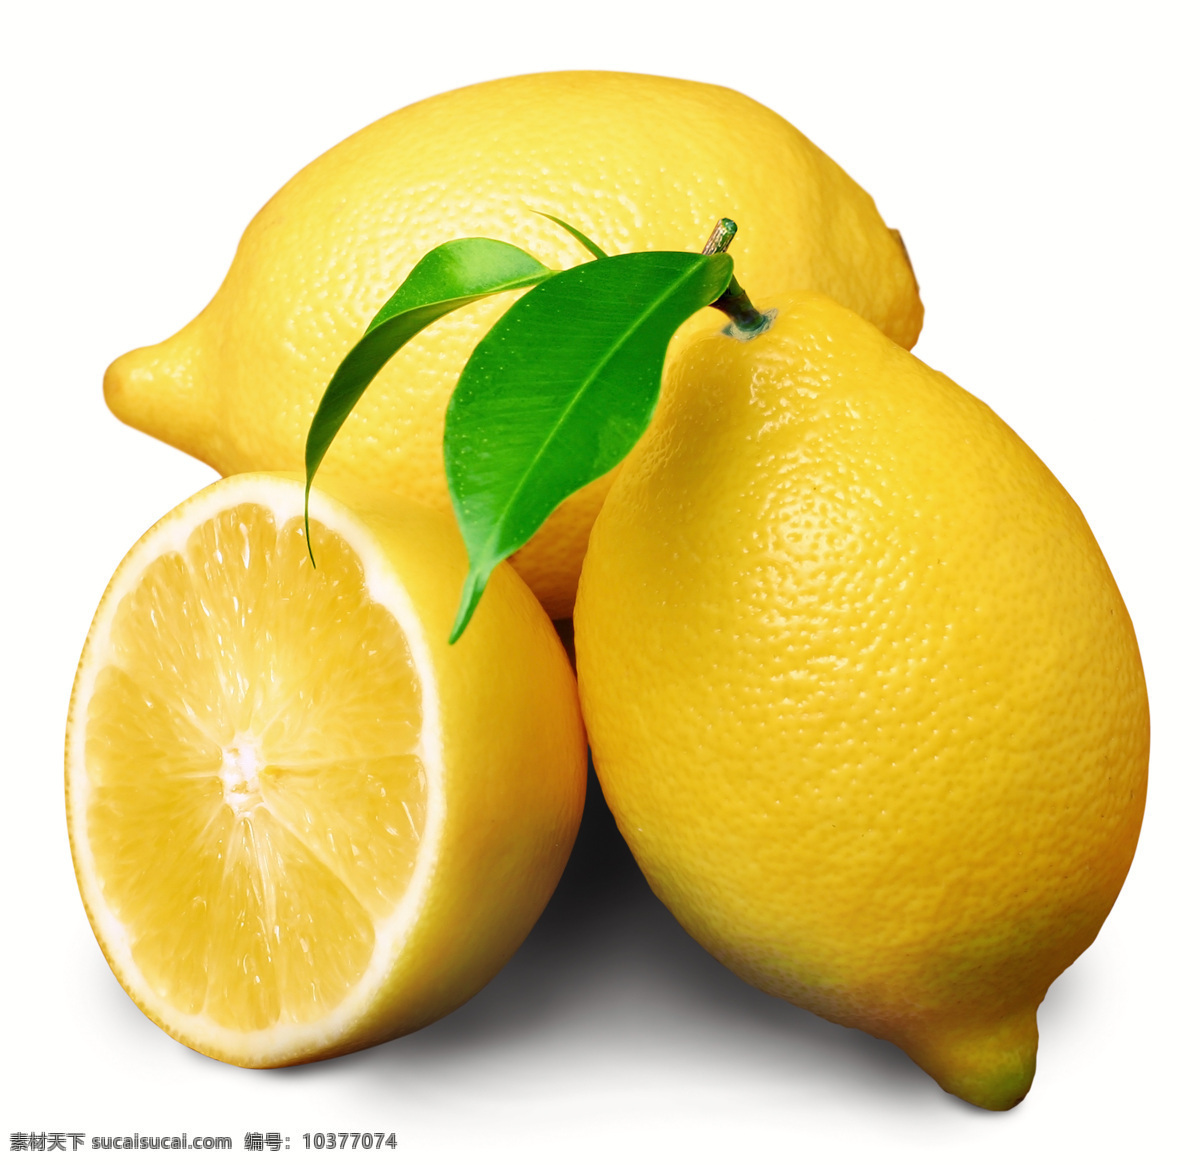 高清 柠檬 设计素材 水果类 切开的柠檬 完整的柠檬 黄色柠檬 高清柠檬 生物世界